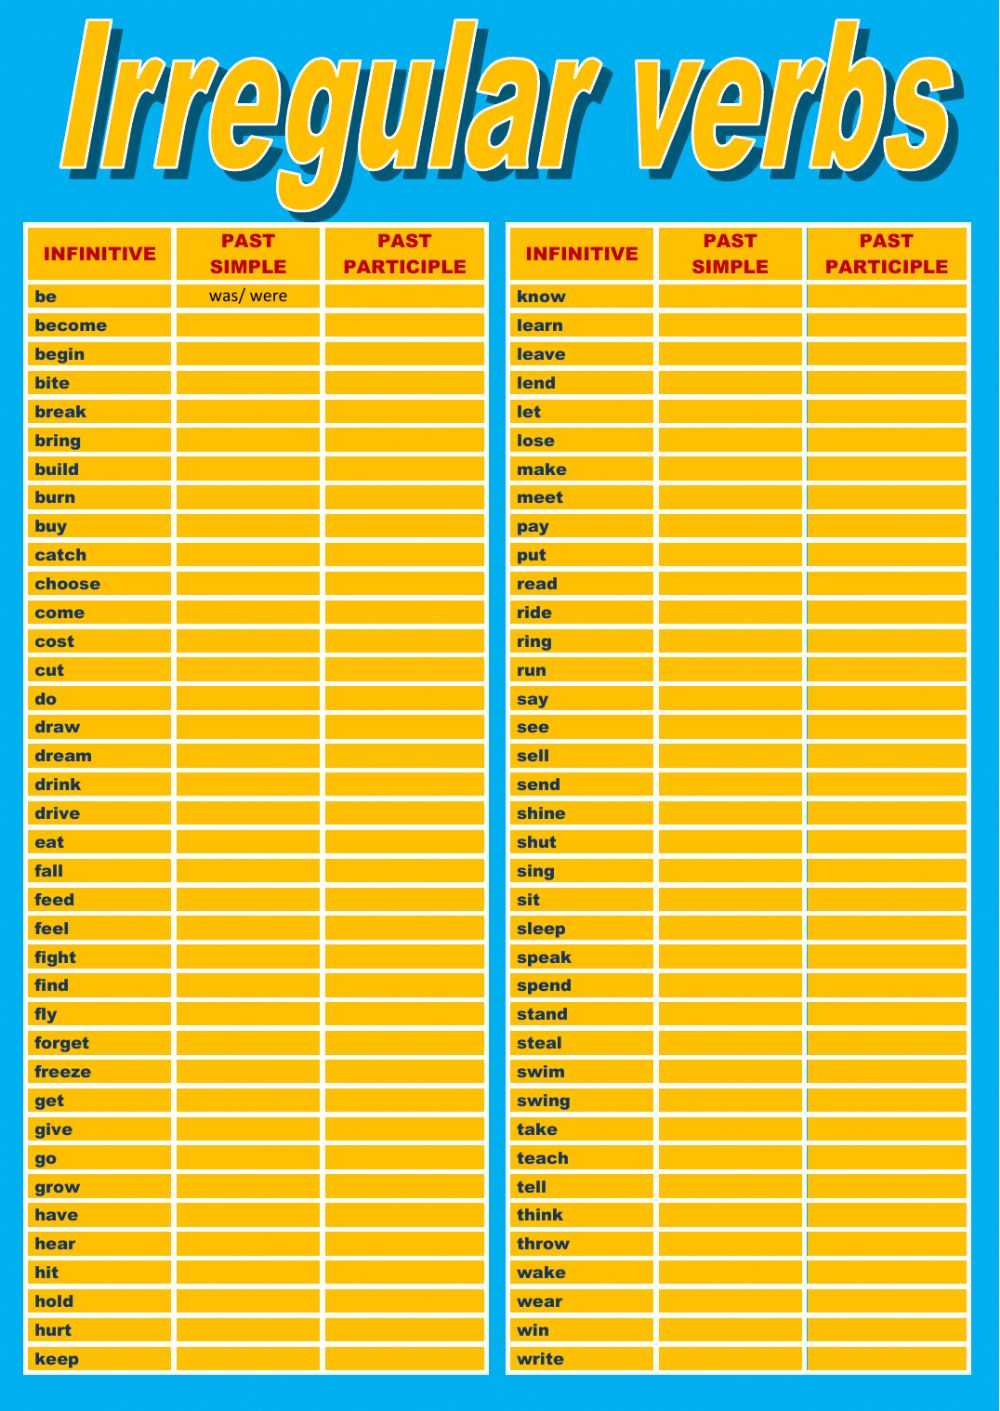 Контрольная неправильные глаголы. Таблица неправильных глаголов. Неправильные глаголы exercises. Irregular verbs тест. Неправильные глаголы английского языка.